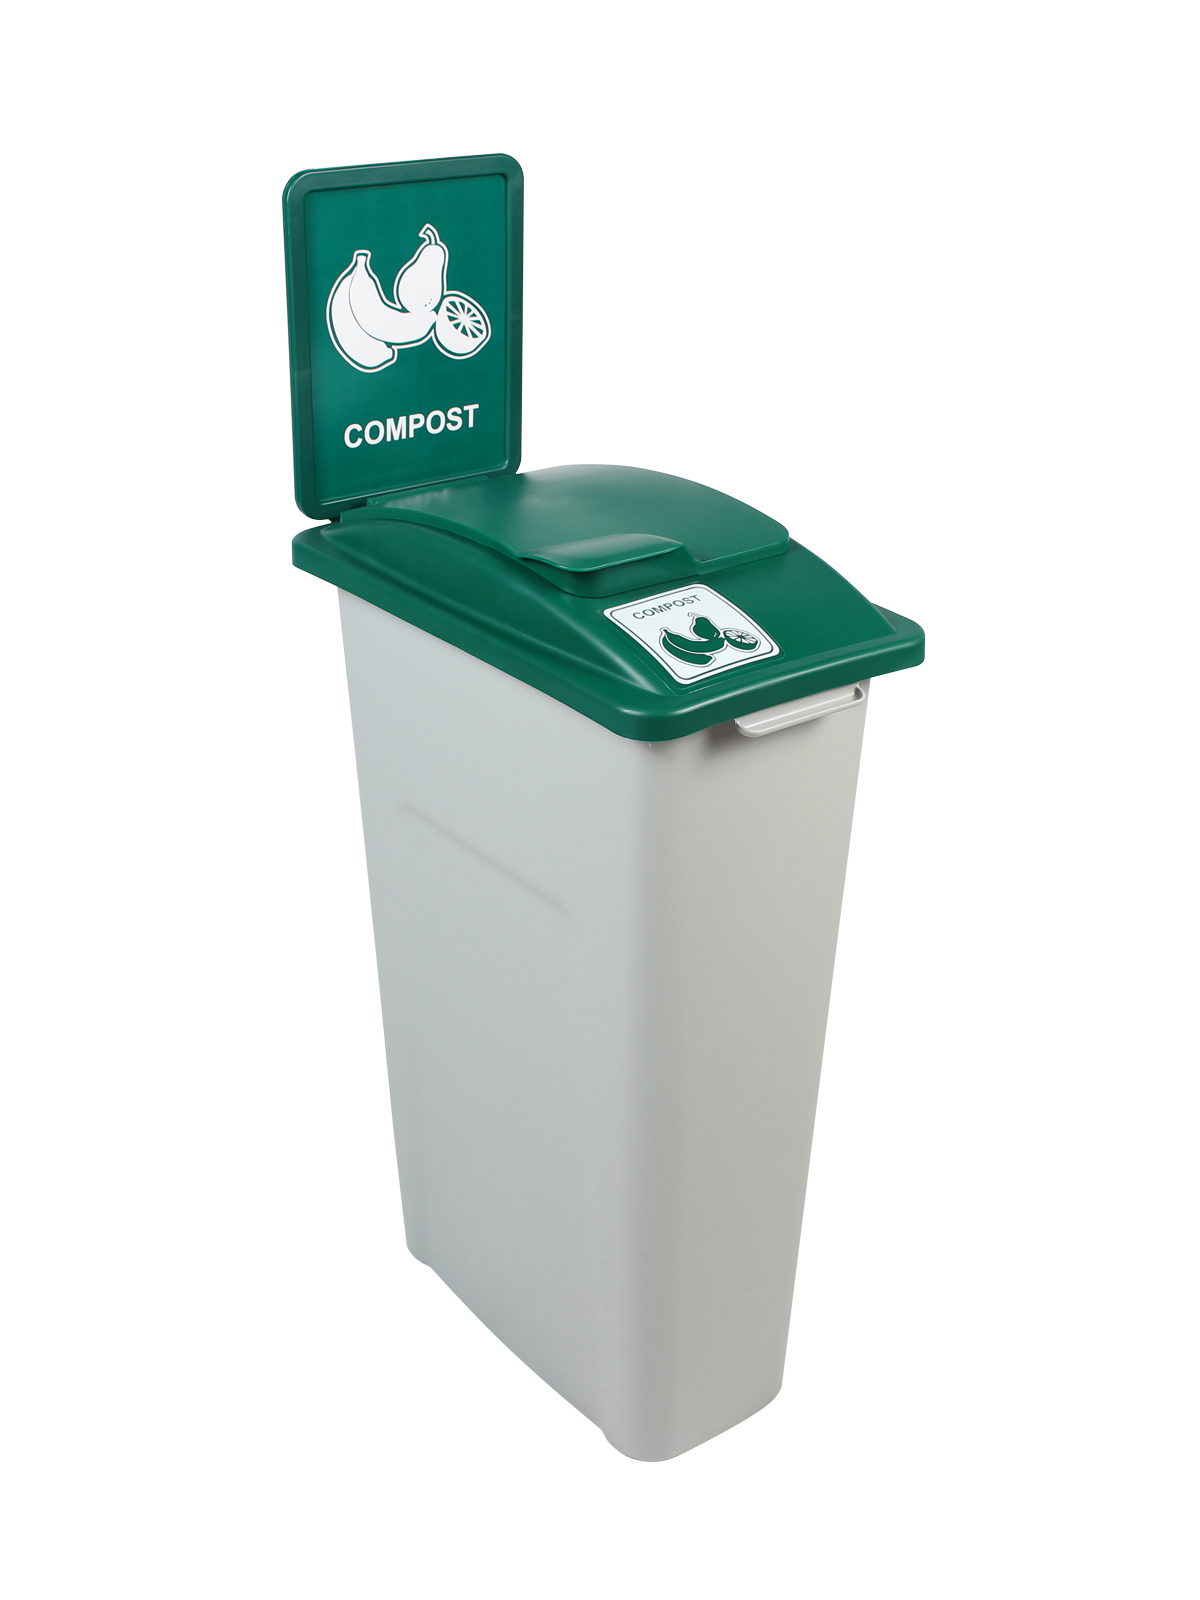 废物观察者 - 单堆肥 - 固体升降机 - 灰绿色